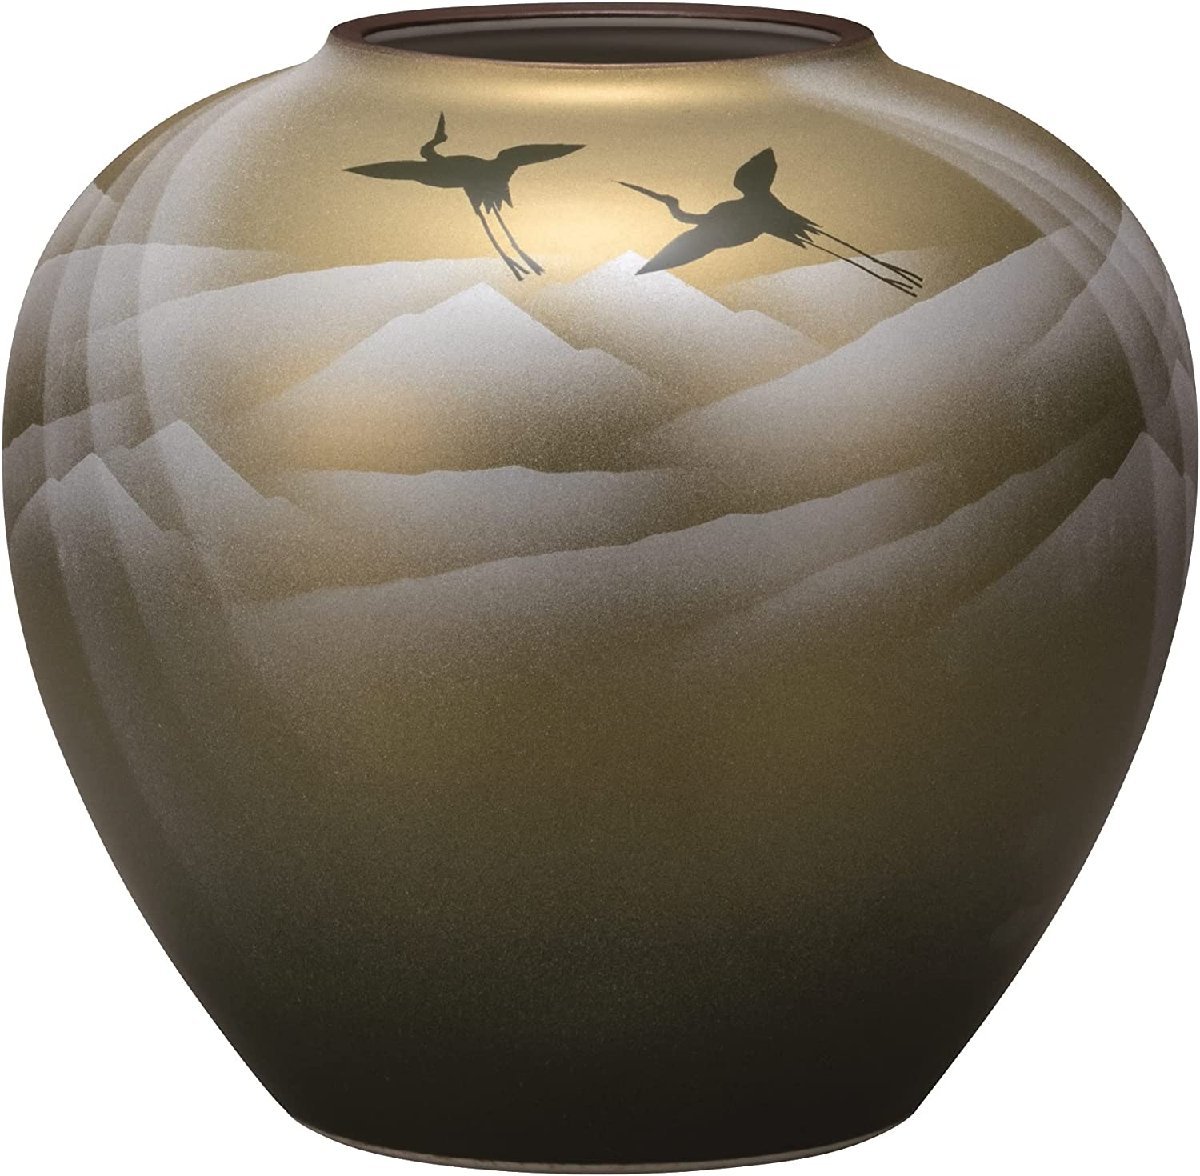 九谷焼 花器 花瓶 陶器 7号 銀彩山 伝統工芸 日本製 和風 フラワーベース 置物 贈り物 ギフト お祝い